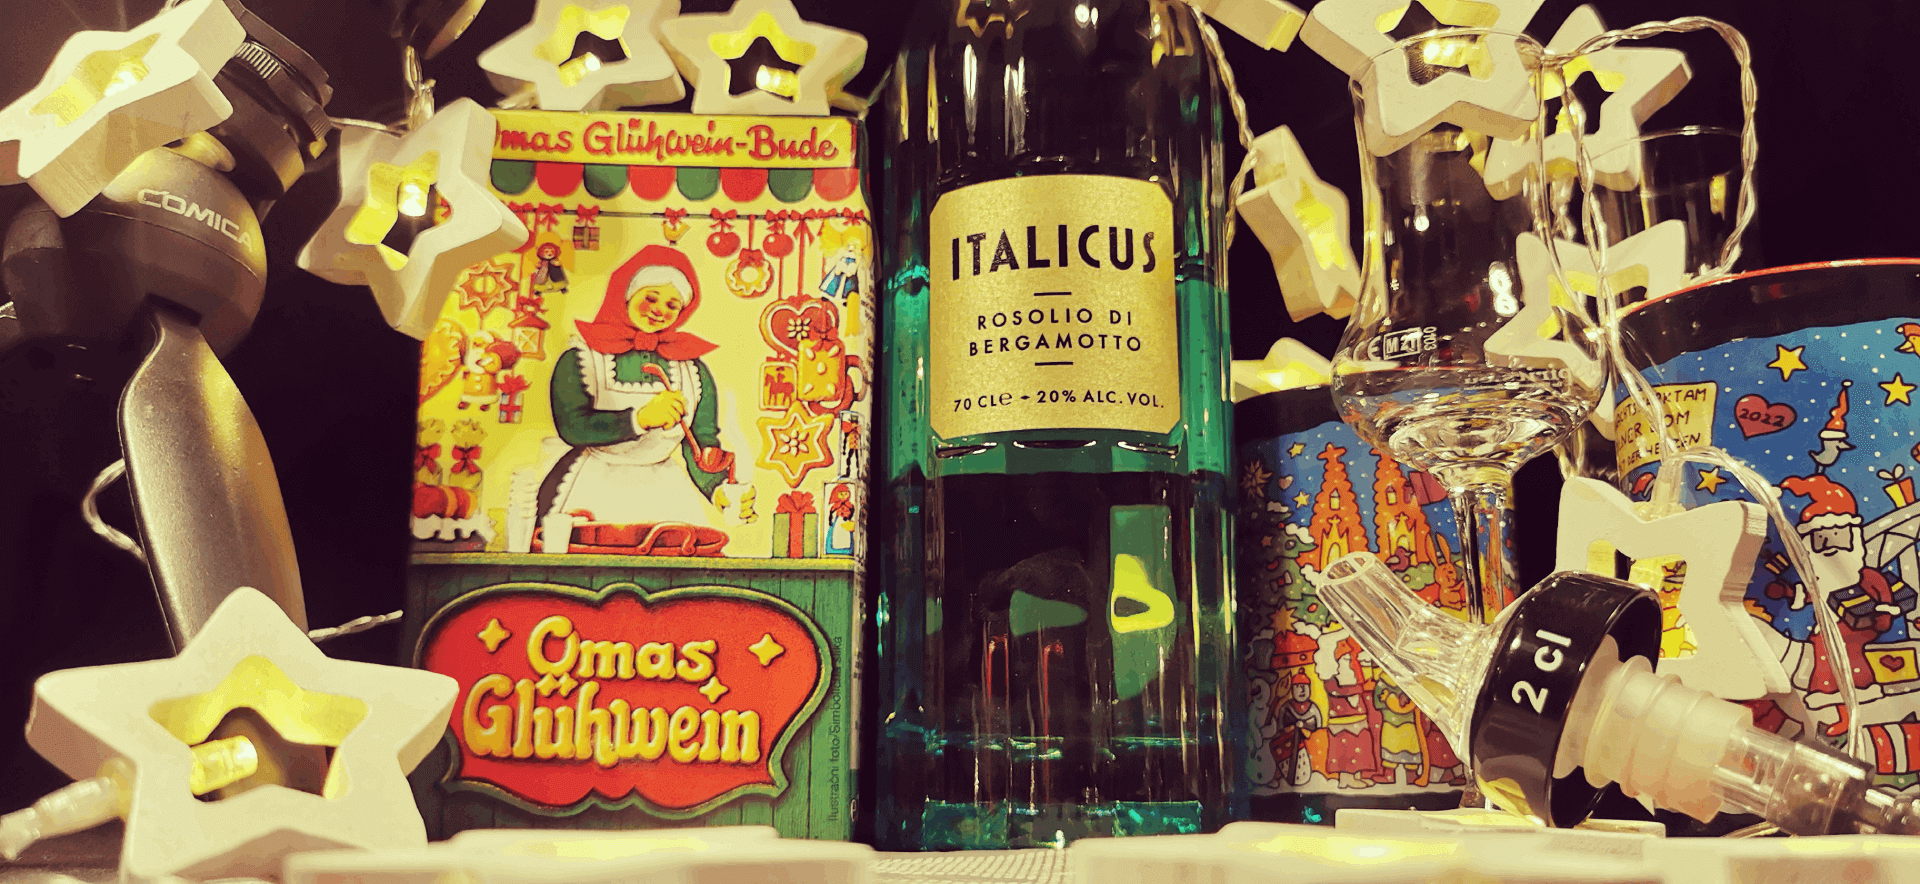 Bild des Glühwein-Checks: Eine Flasche Italicus neben einem Tetrapak Omas Glühwein Buden und zwei Degustiergläsern und zwei Glühwein Tassen